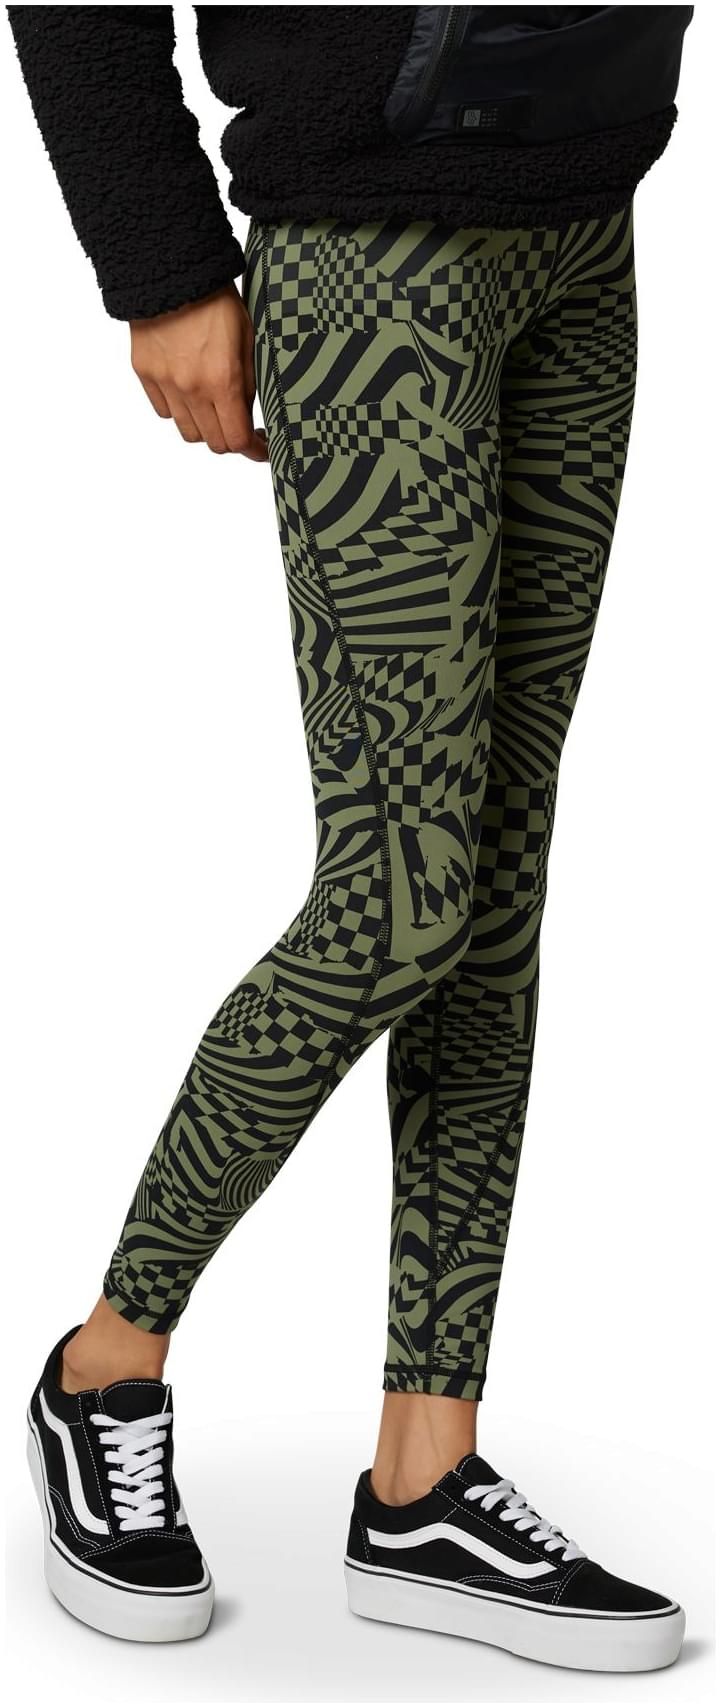  Ts57 Detour Legging Black/Green - Women's leggings